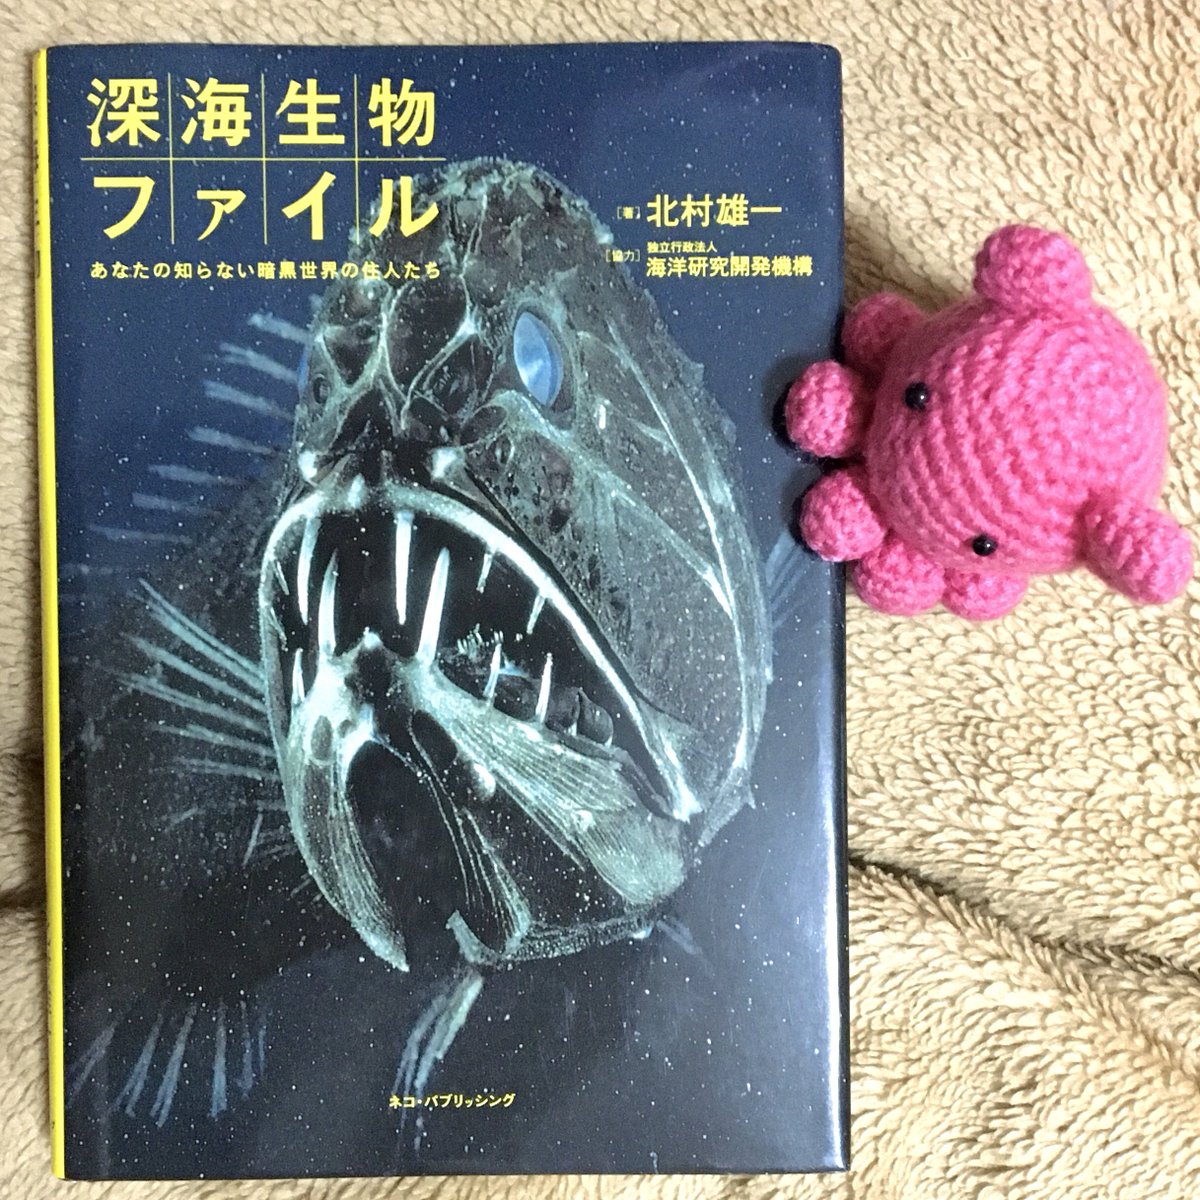 深海生物の本です。
図書館で読んで、良い本だったので通販で購入しました。
メンダコも載っています。
#本 #book #深海生物 #deepseacreatures #メンダコ #Opisthoteuthis